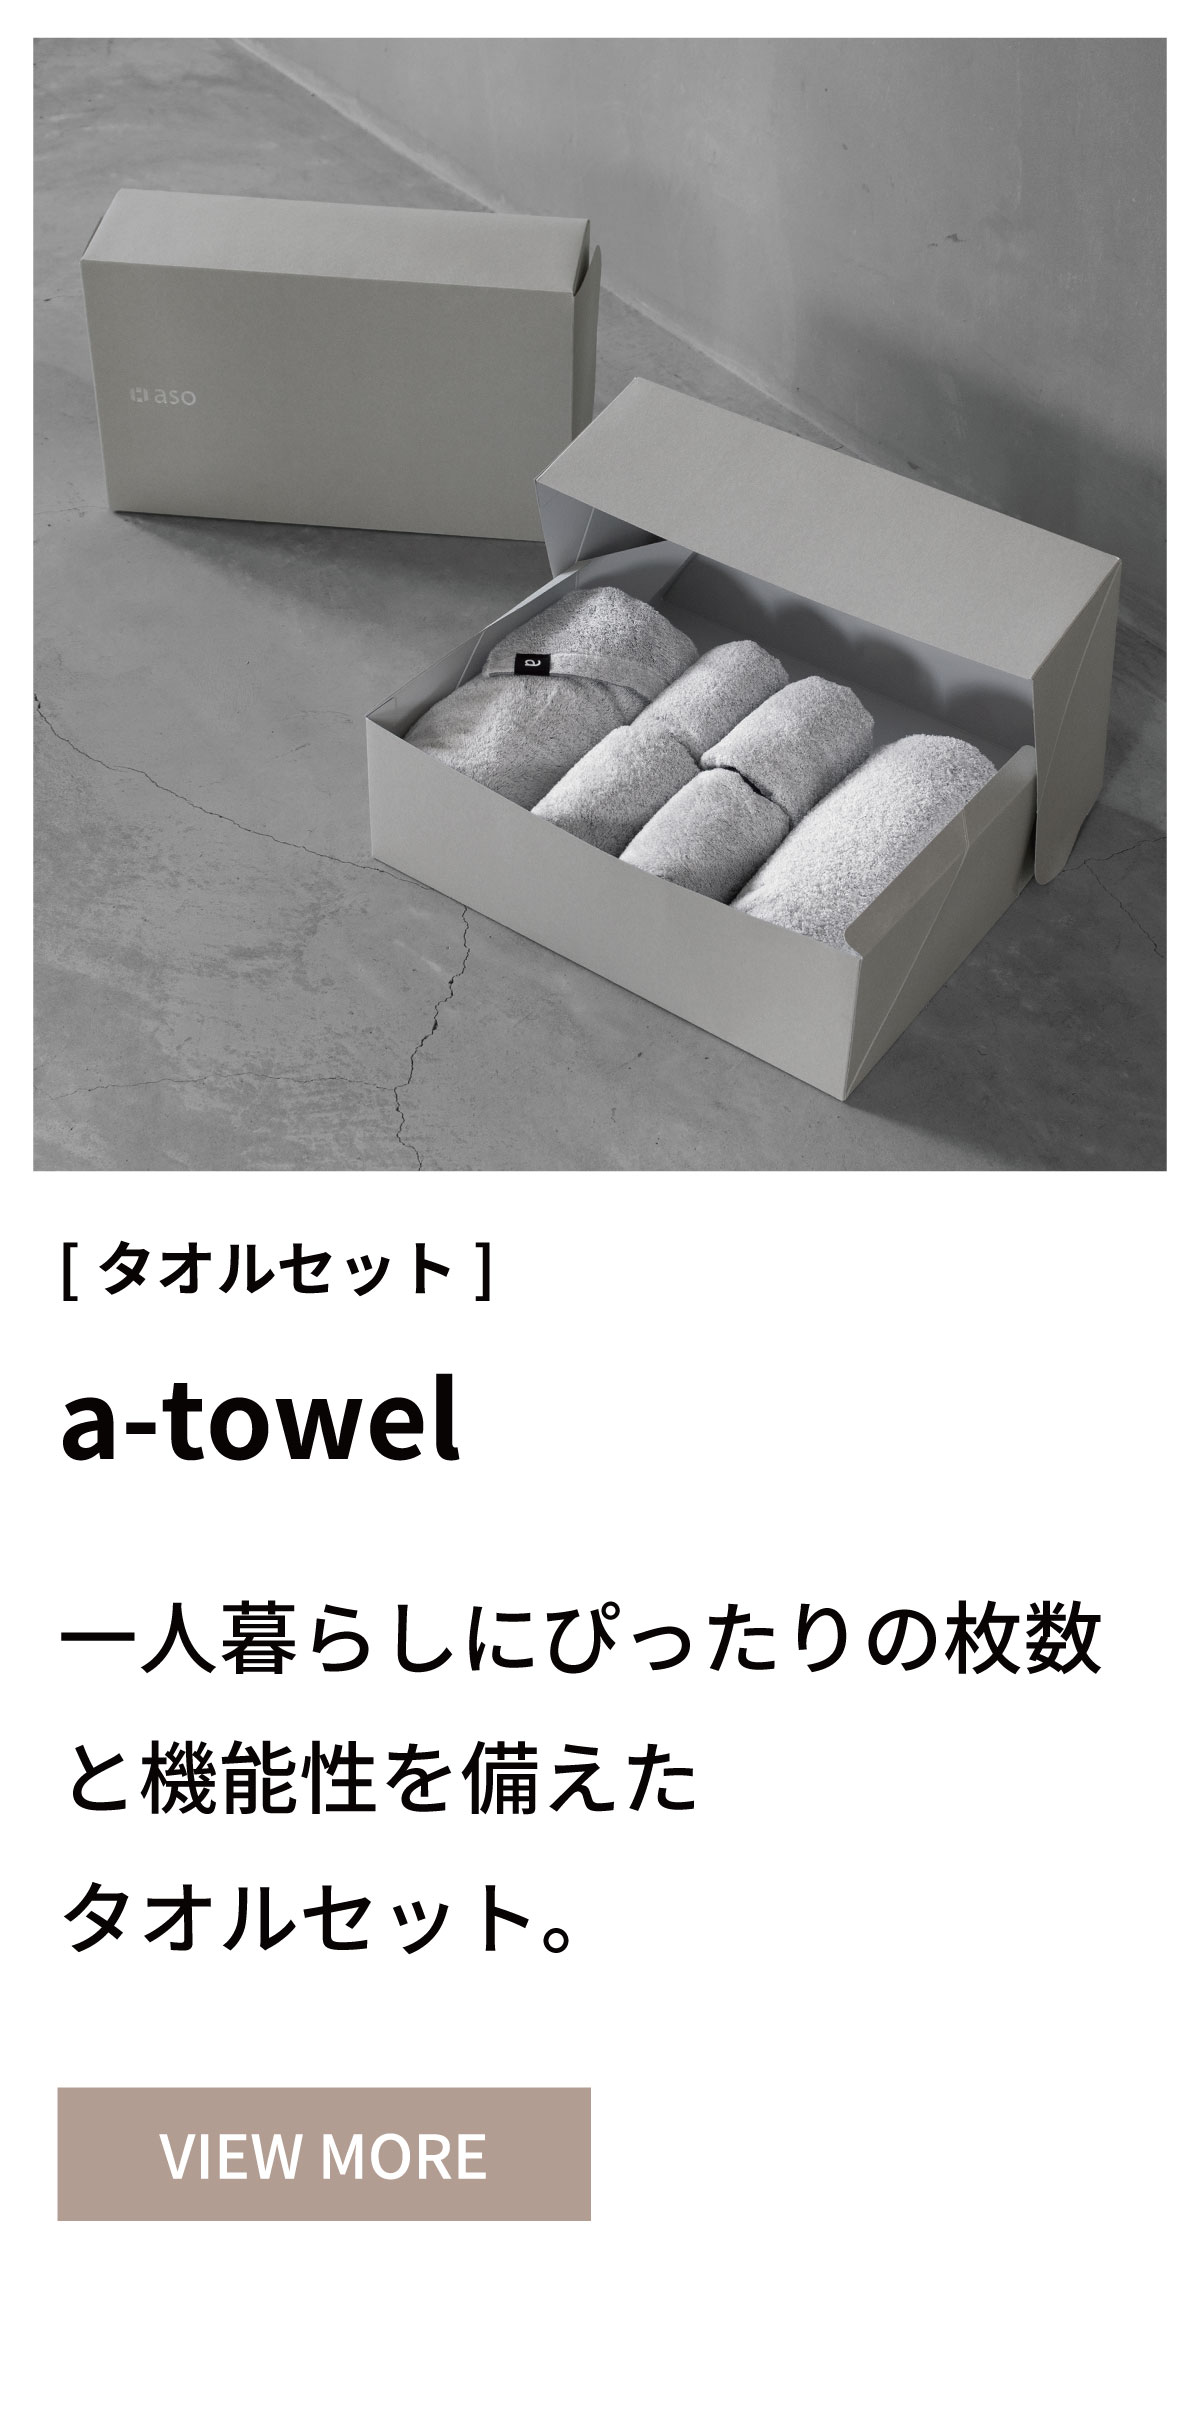 a-towel